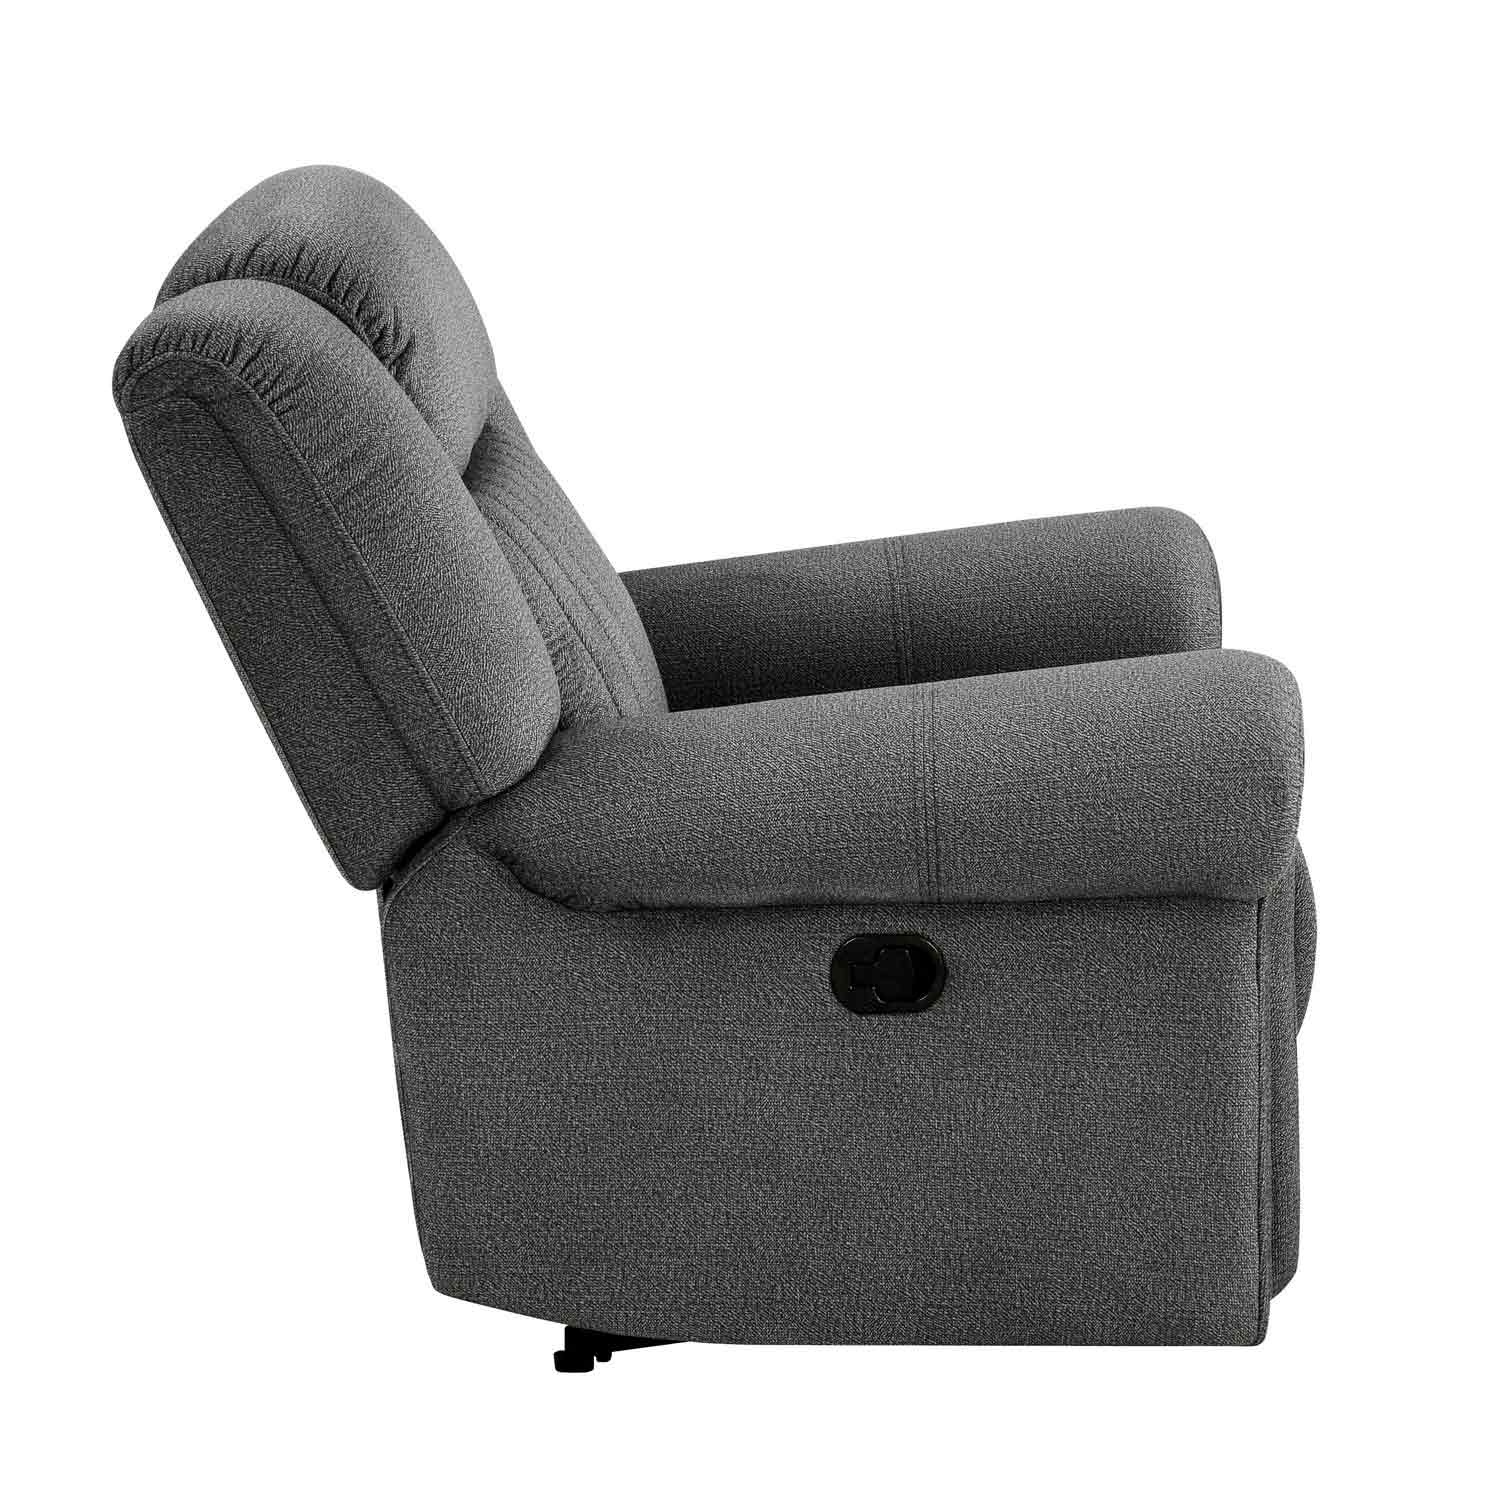 Homelegance Brennen Reclining Chair - Charcoal